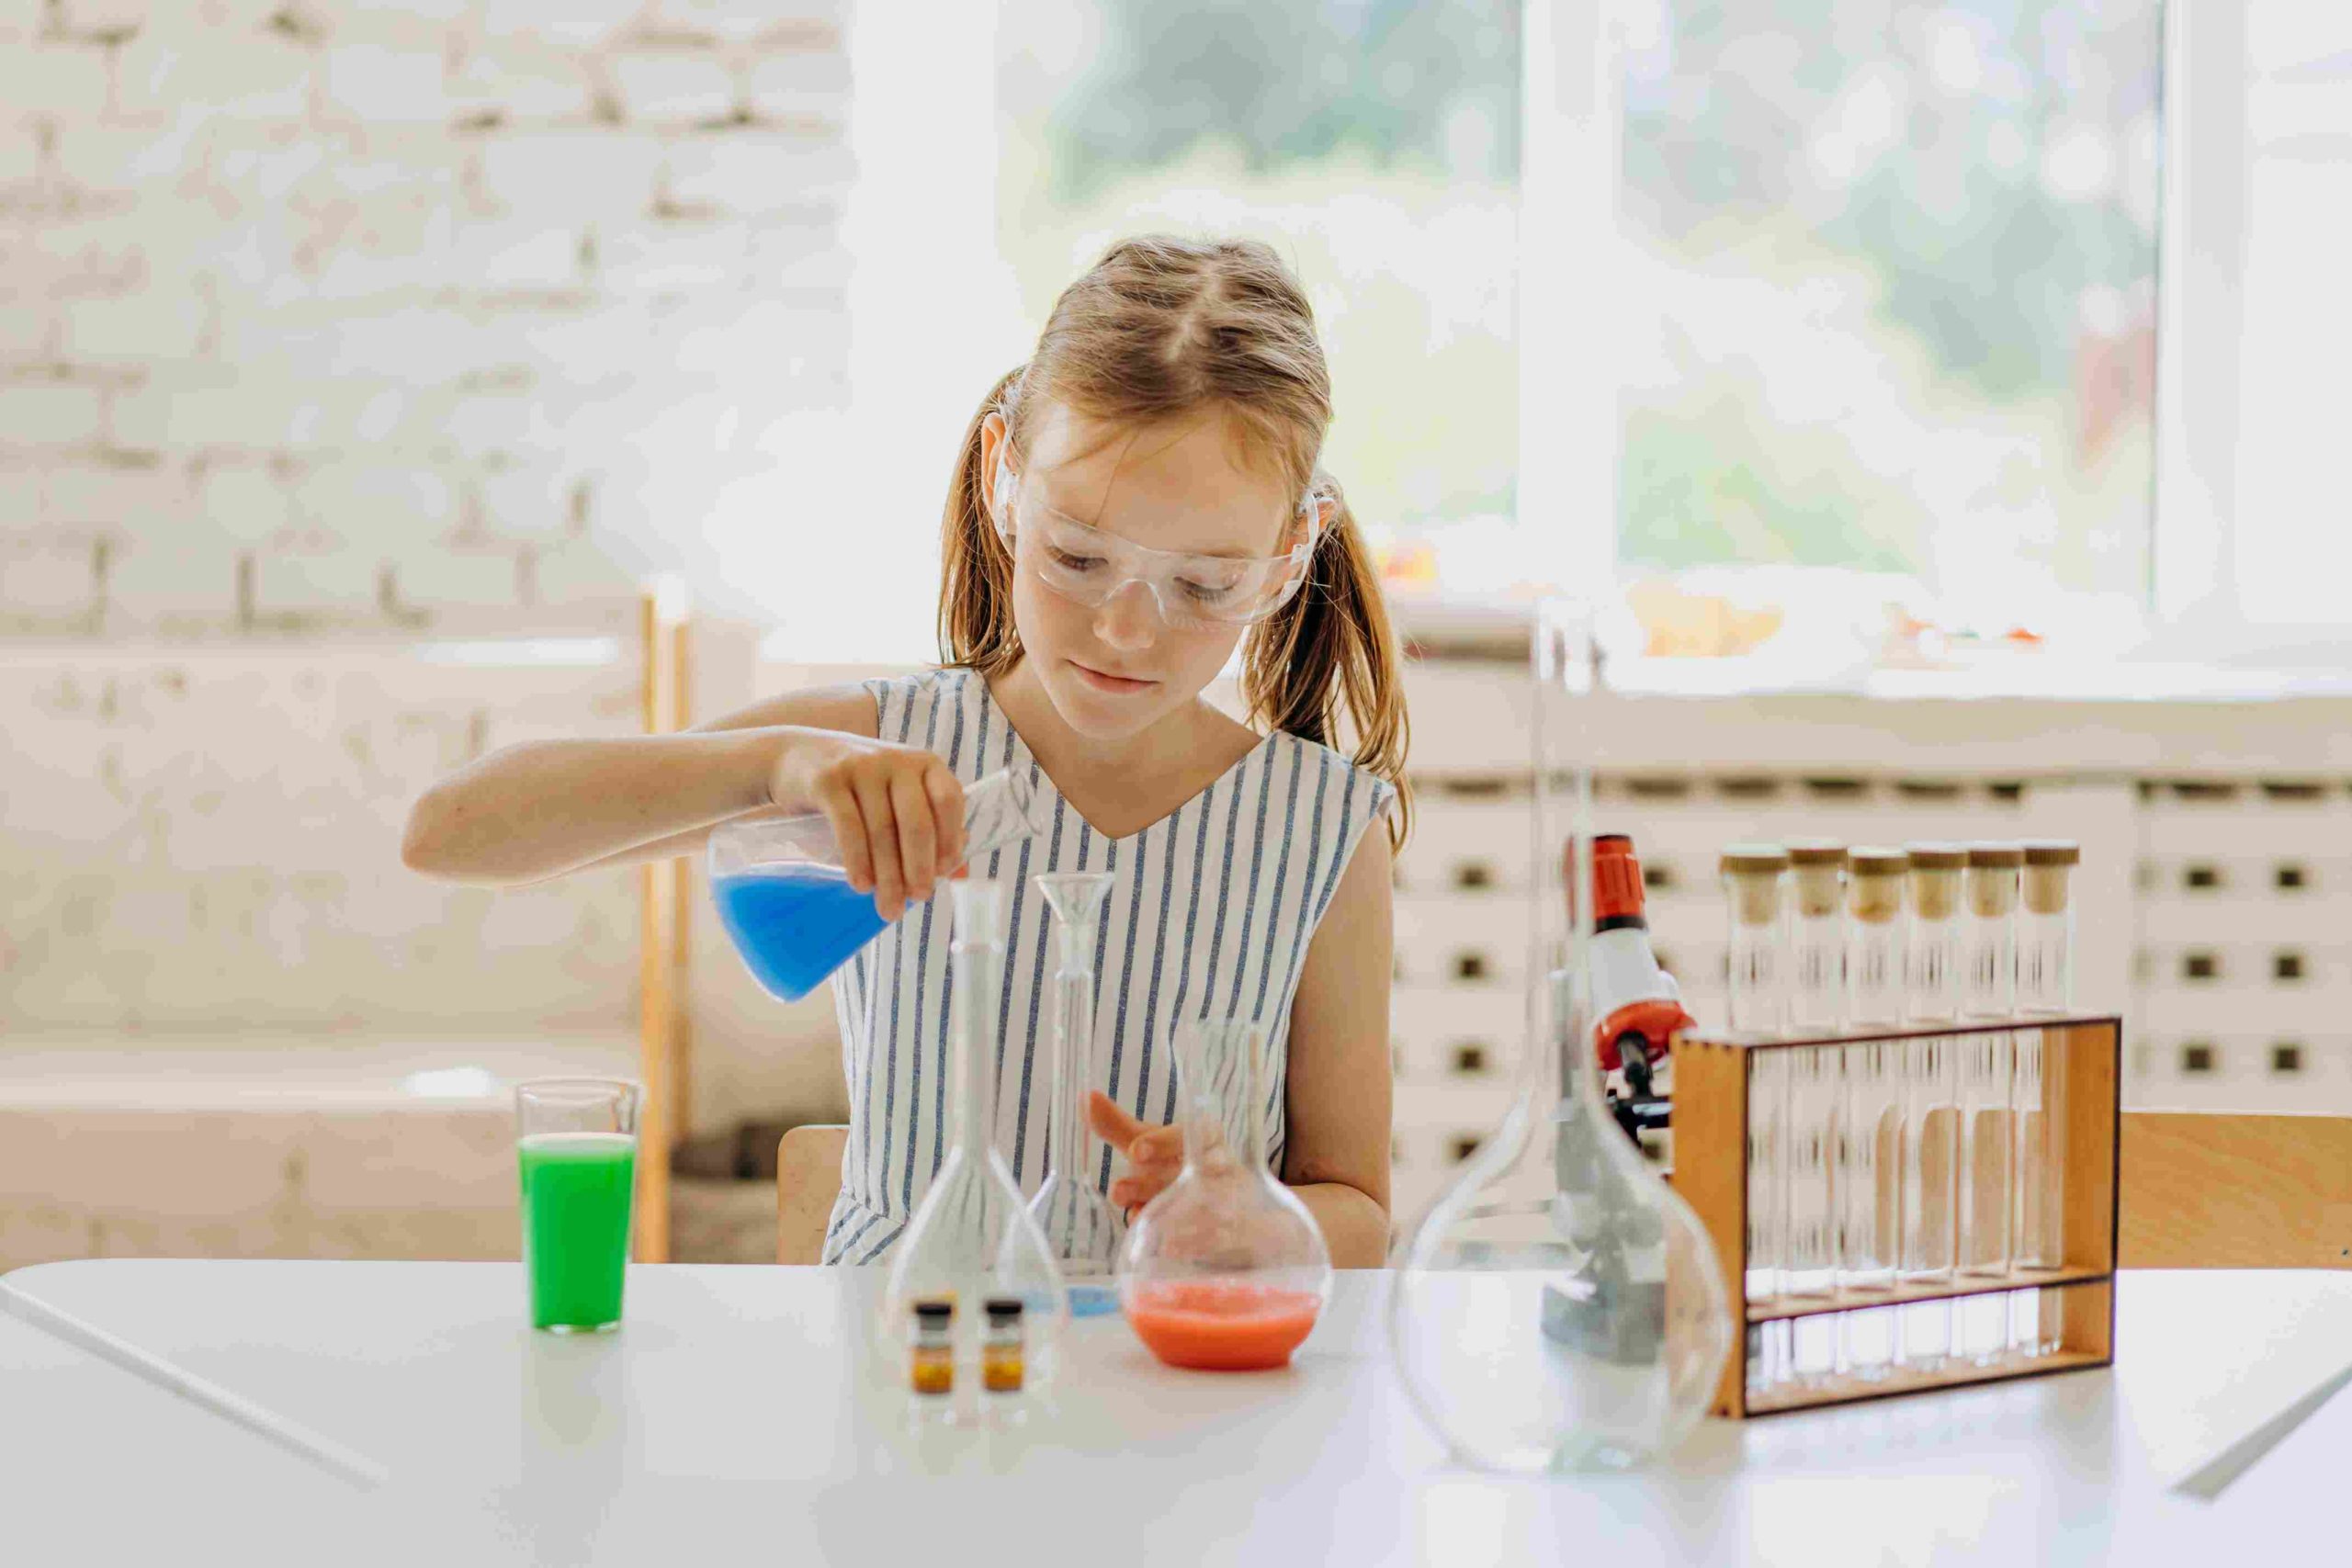 Des idées pour intéresser son enfant à la science.